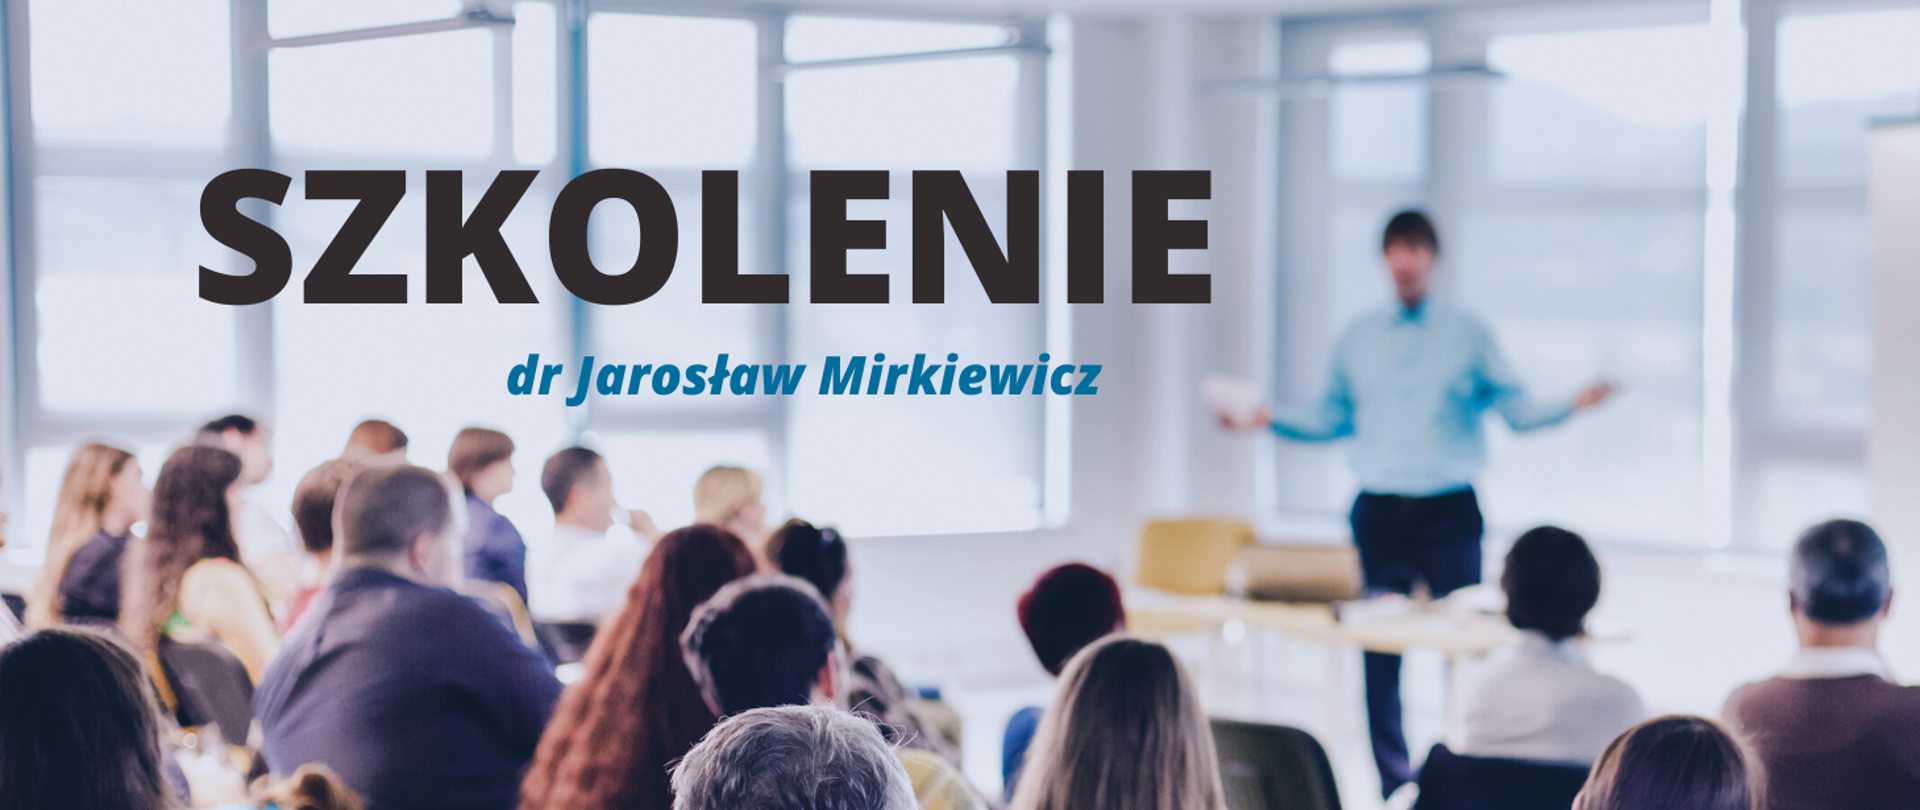 Baner z czarnym napisem "SZKOLENIE" i niebieskim "dr Jarosław Mirkiewicz". W tle zdjęcie wykładowcy w niebieskiej koszuli, rozkładającego ręce przed którym siedzą uczestnicy wykładu. Zdjęcie w delikatnym rozmyciu.